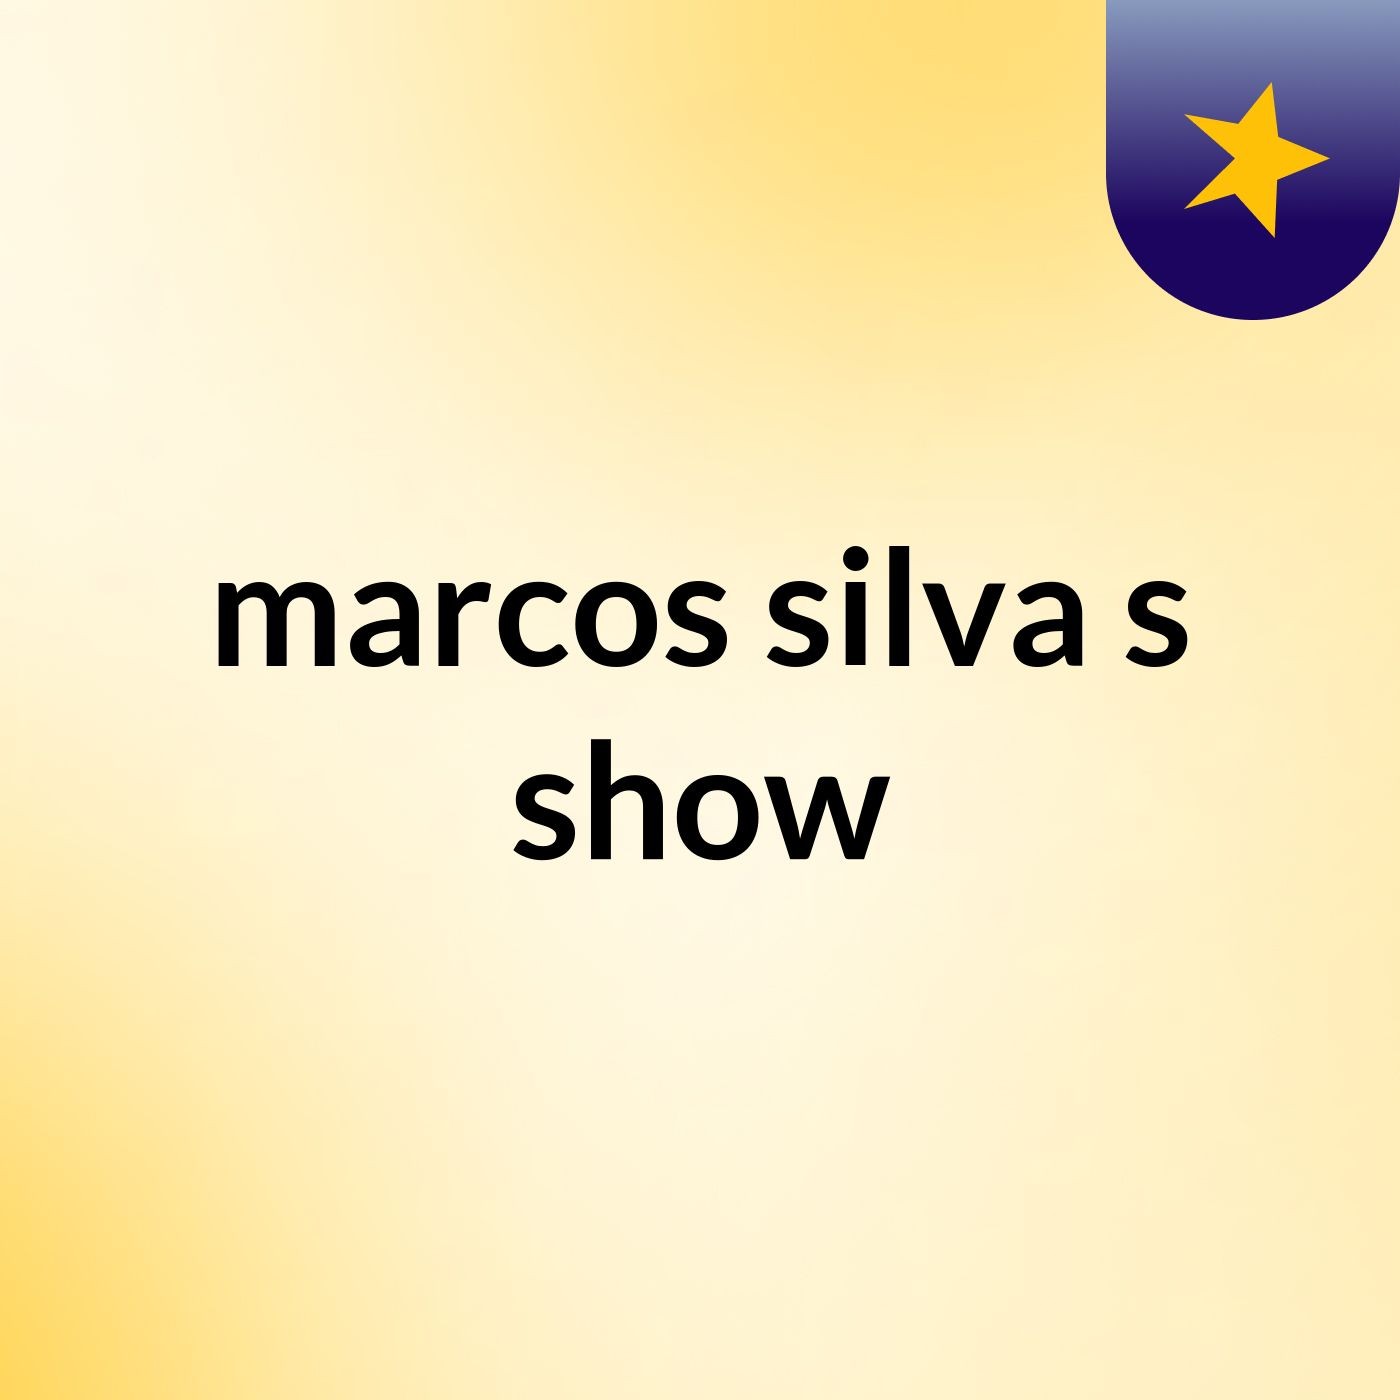 marcos silva's show